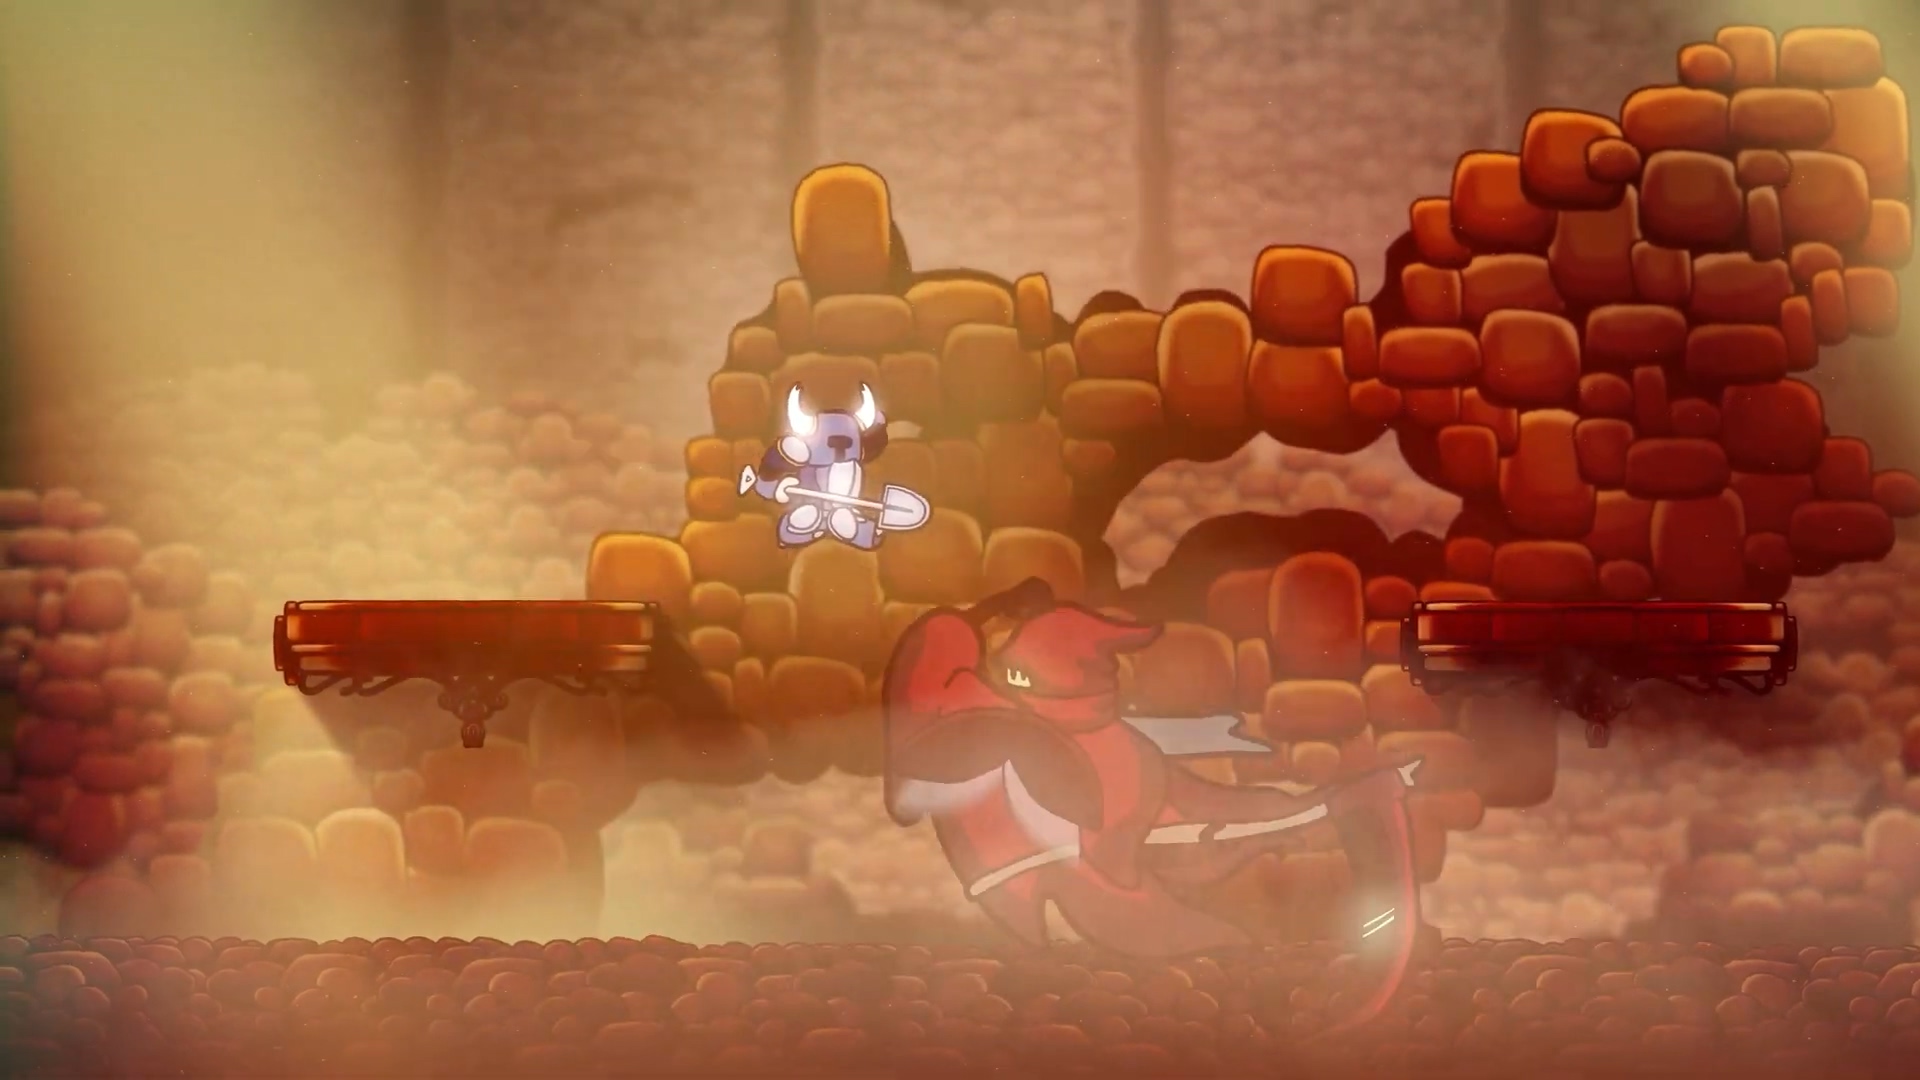 粉絲製作有愛動畫 假如《鏟子騎士》穿越到其他遊戲